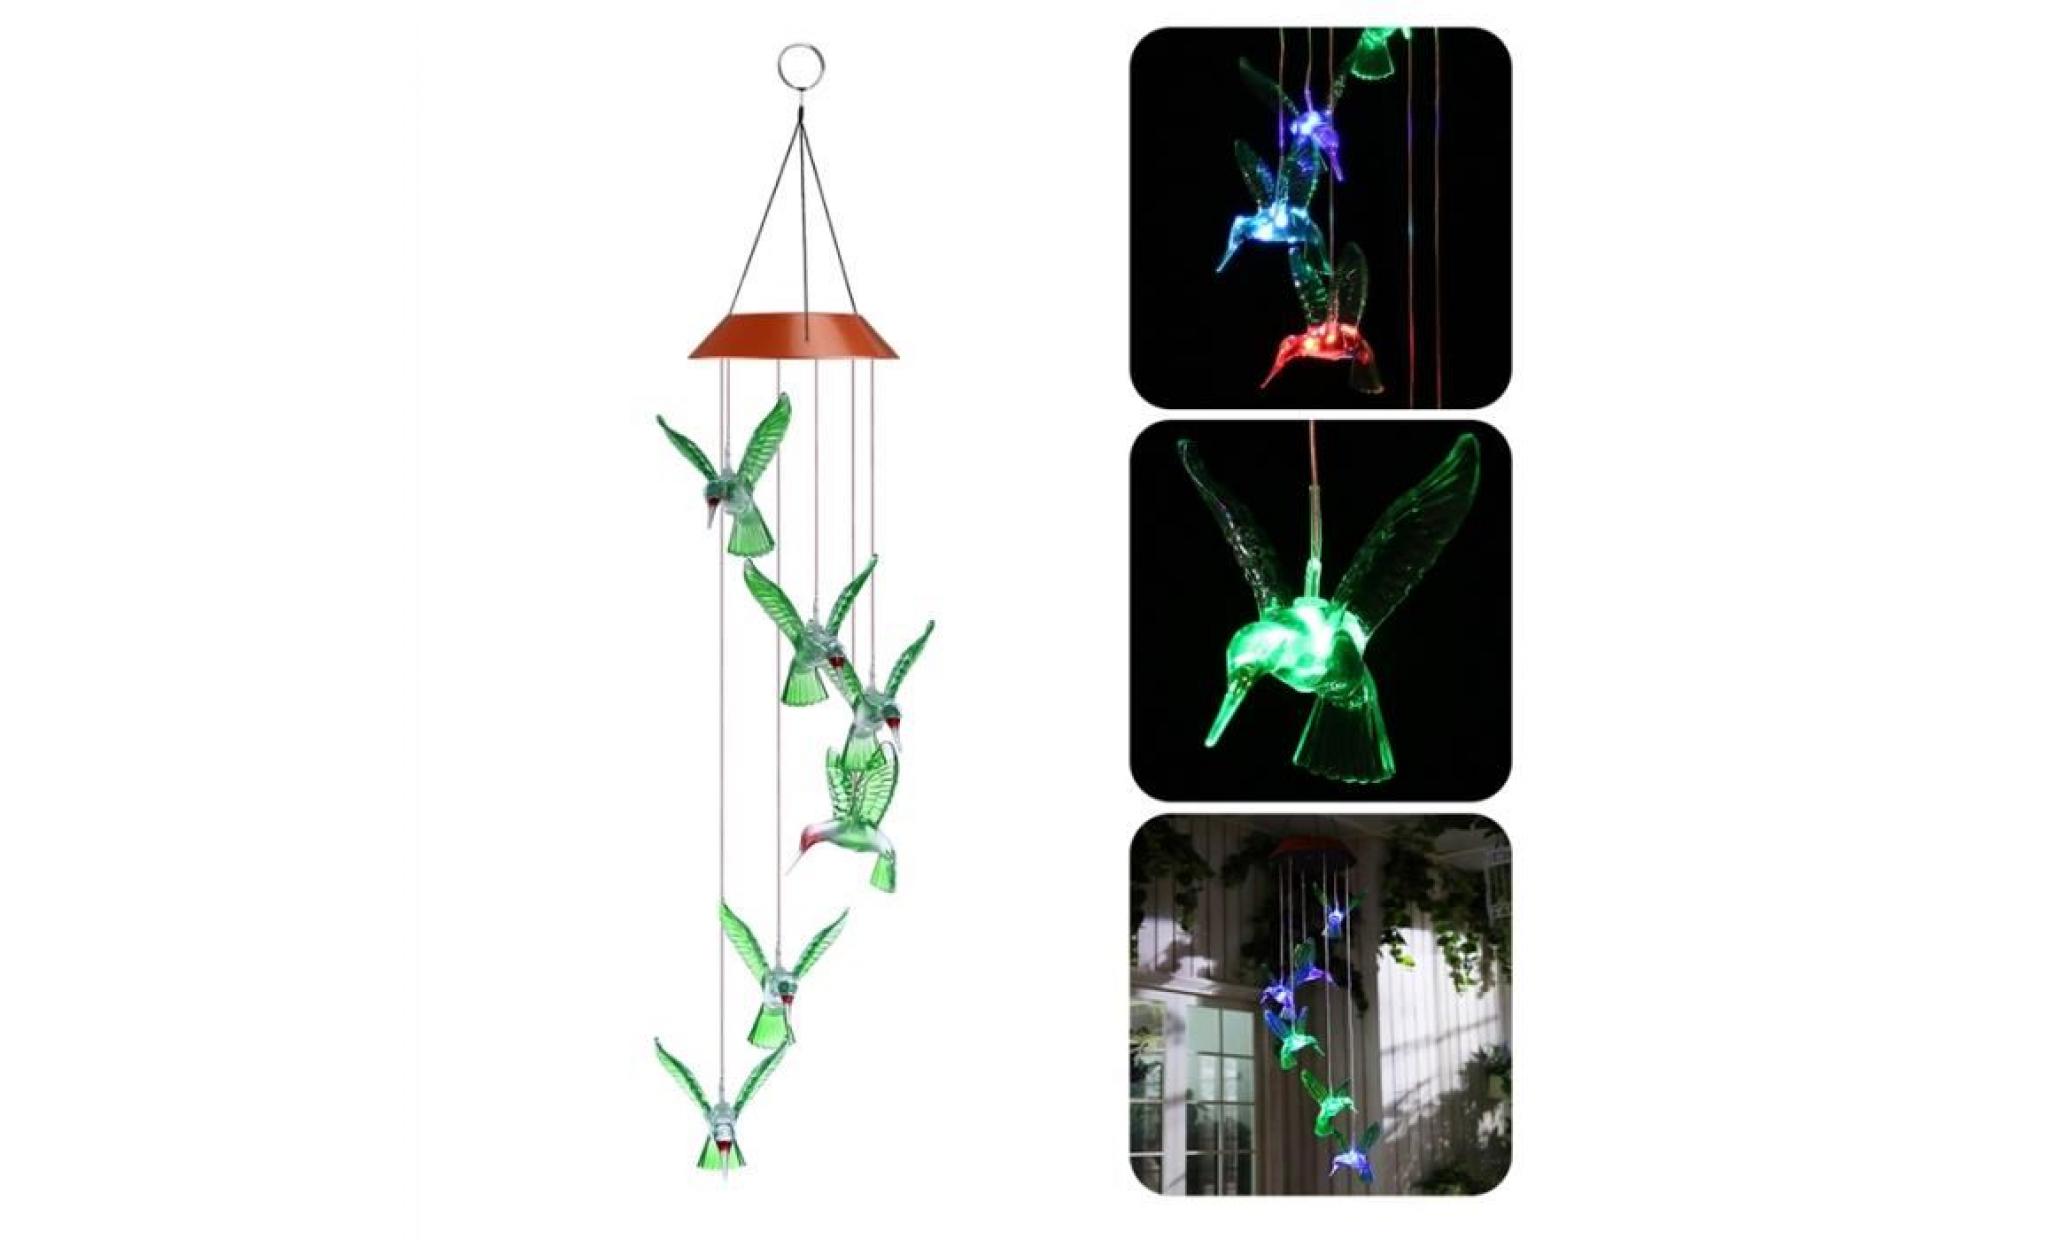 yunlights hummingbird wind chimes led solaire mobile wind chime changement de couleur lampe capteur de vent automatique de la